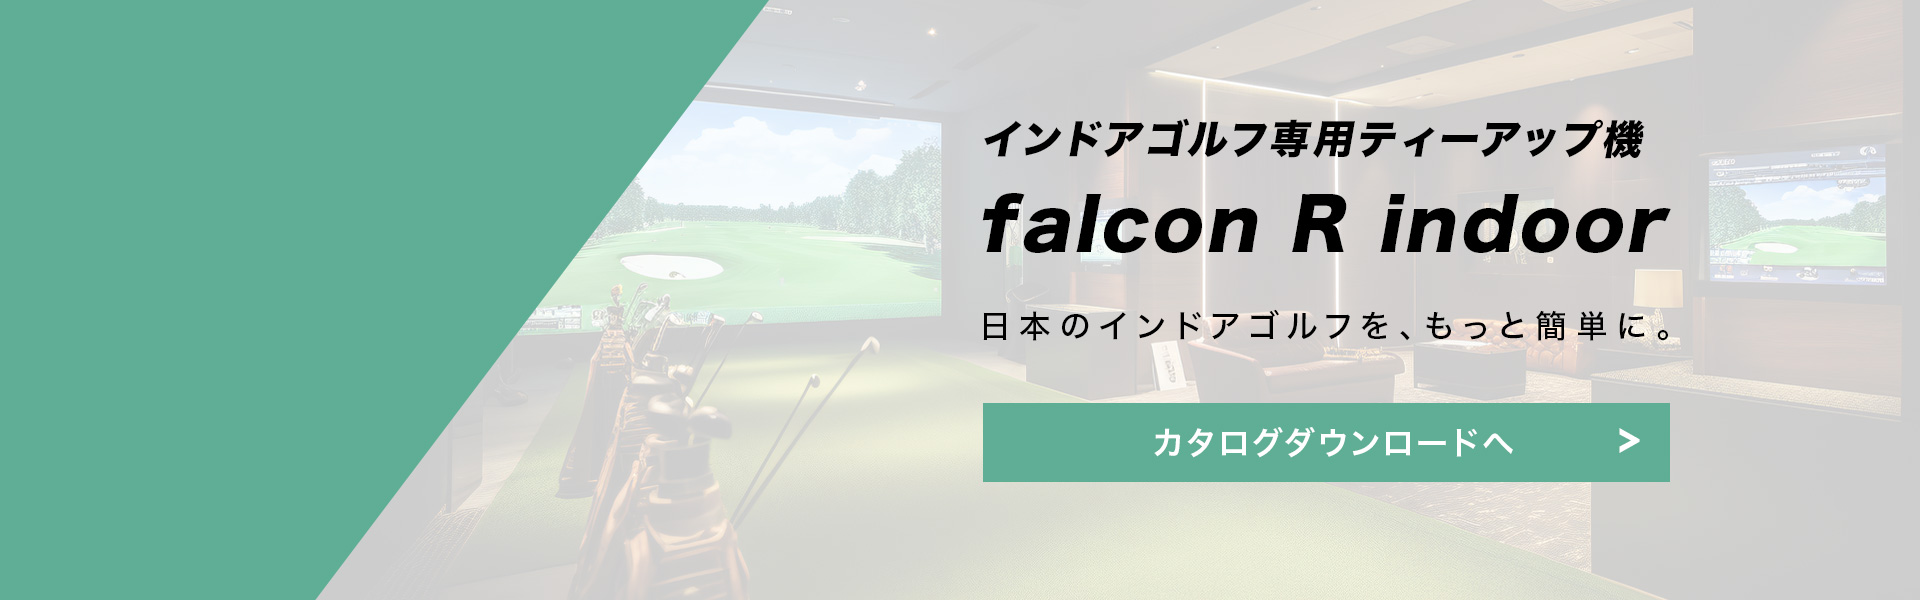 インドアゴルフ専用ティーアップ機falcon R indoor 